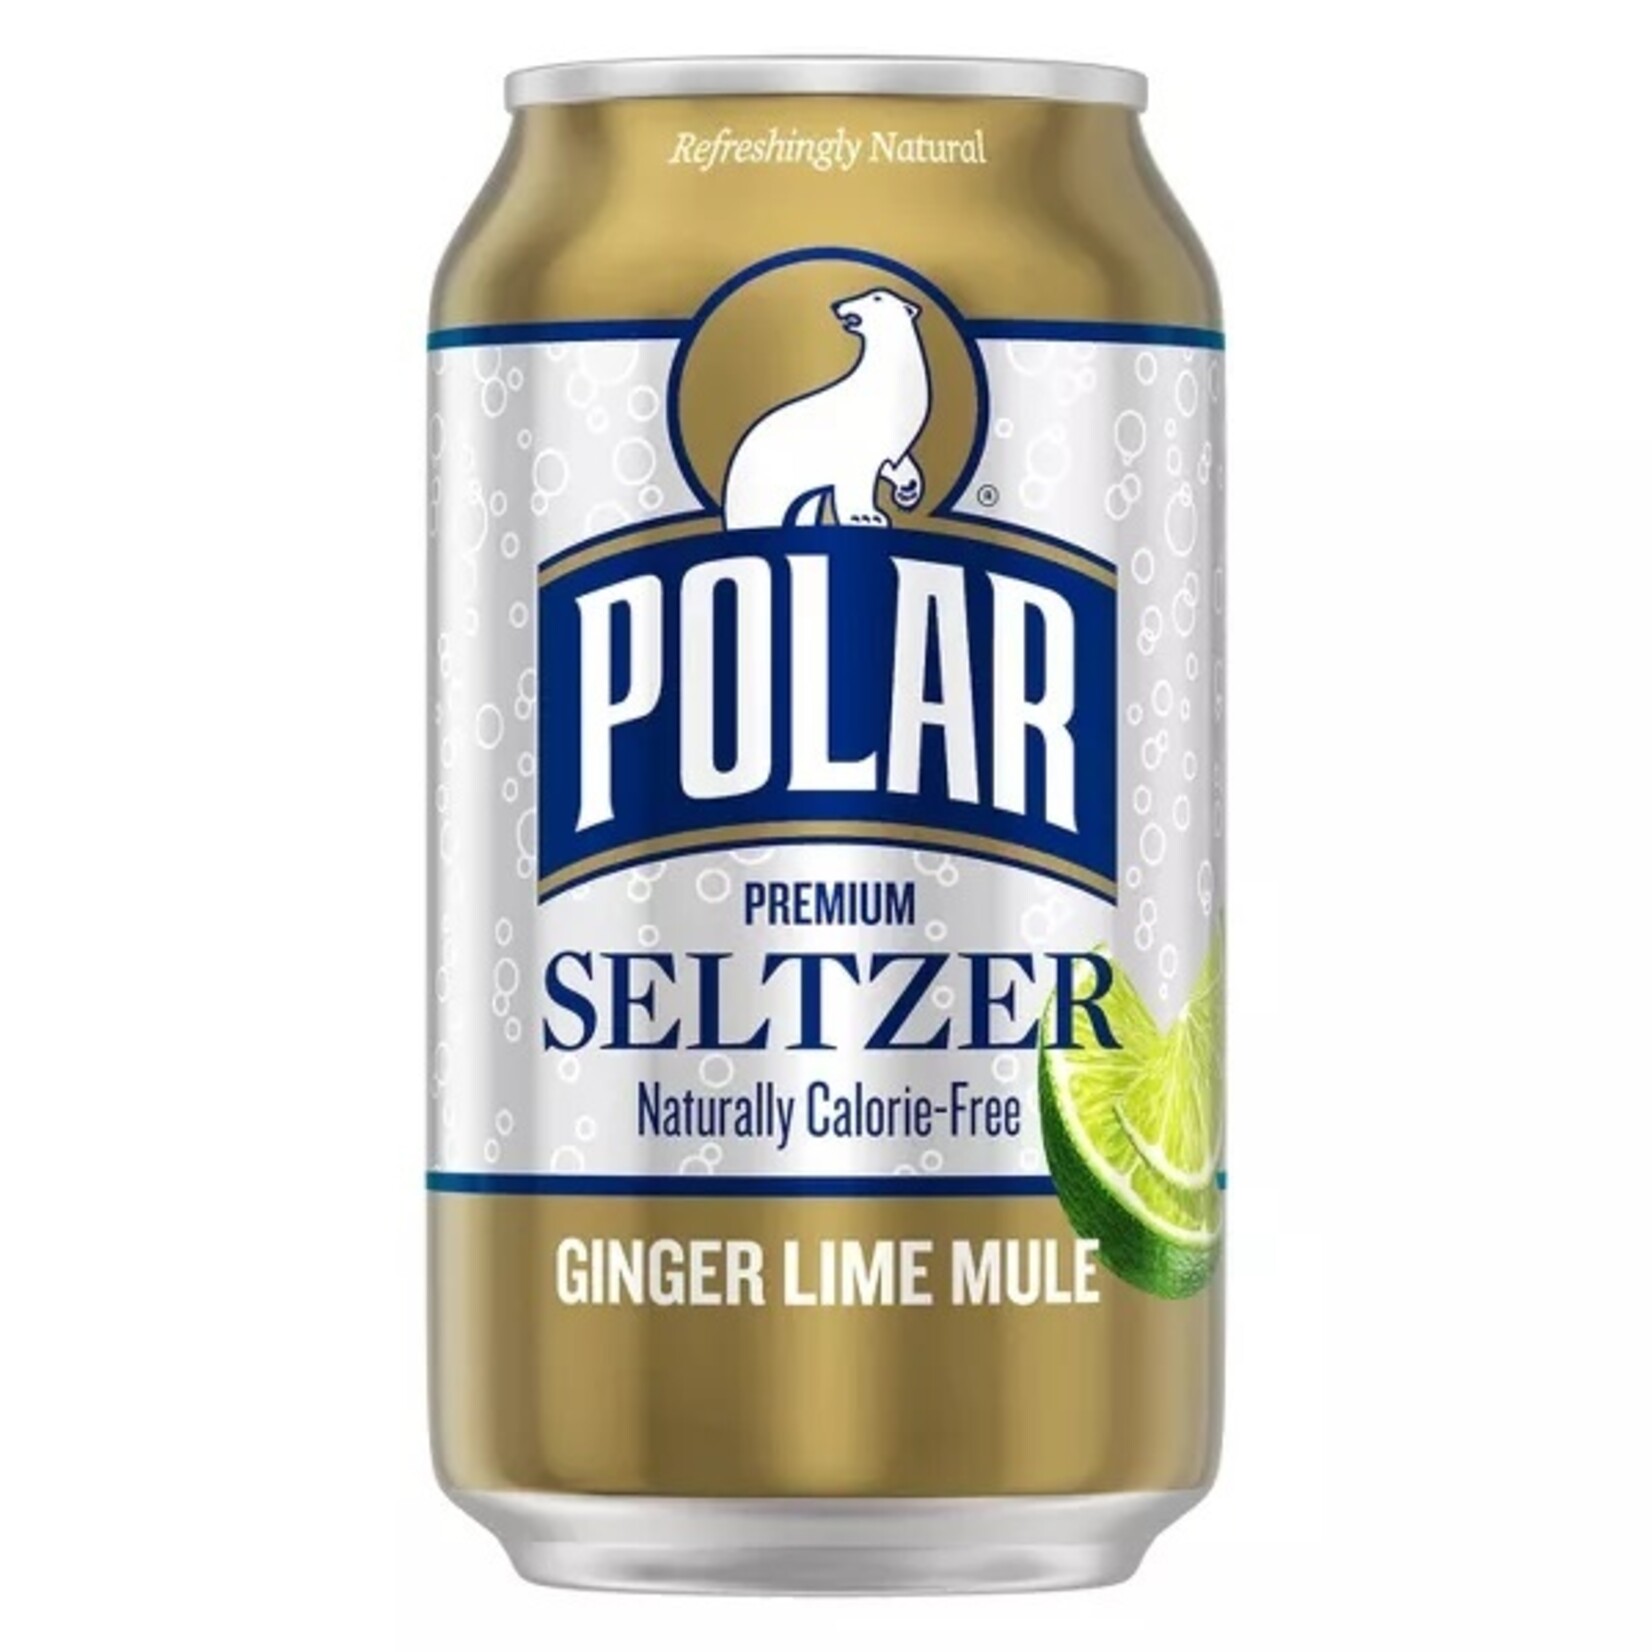 Polar Ginger Lime Mule